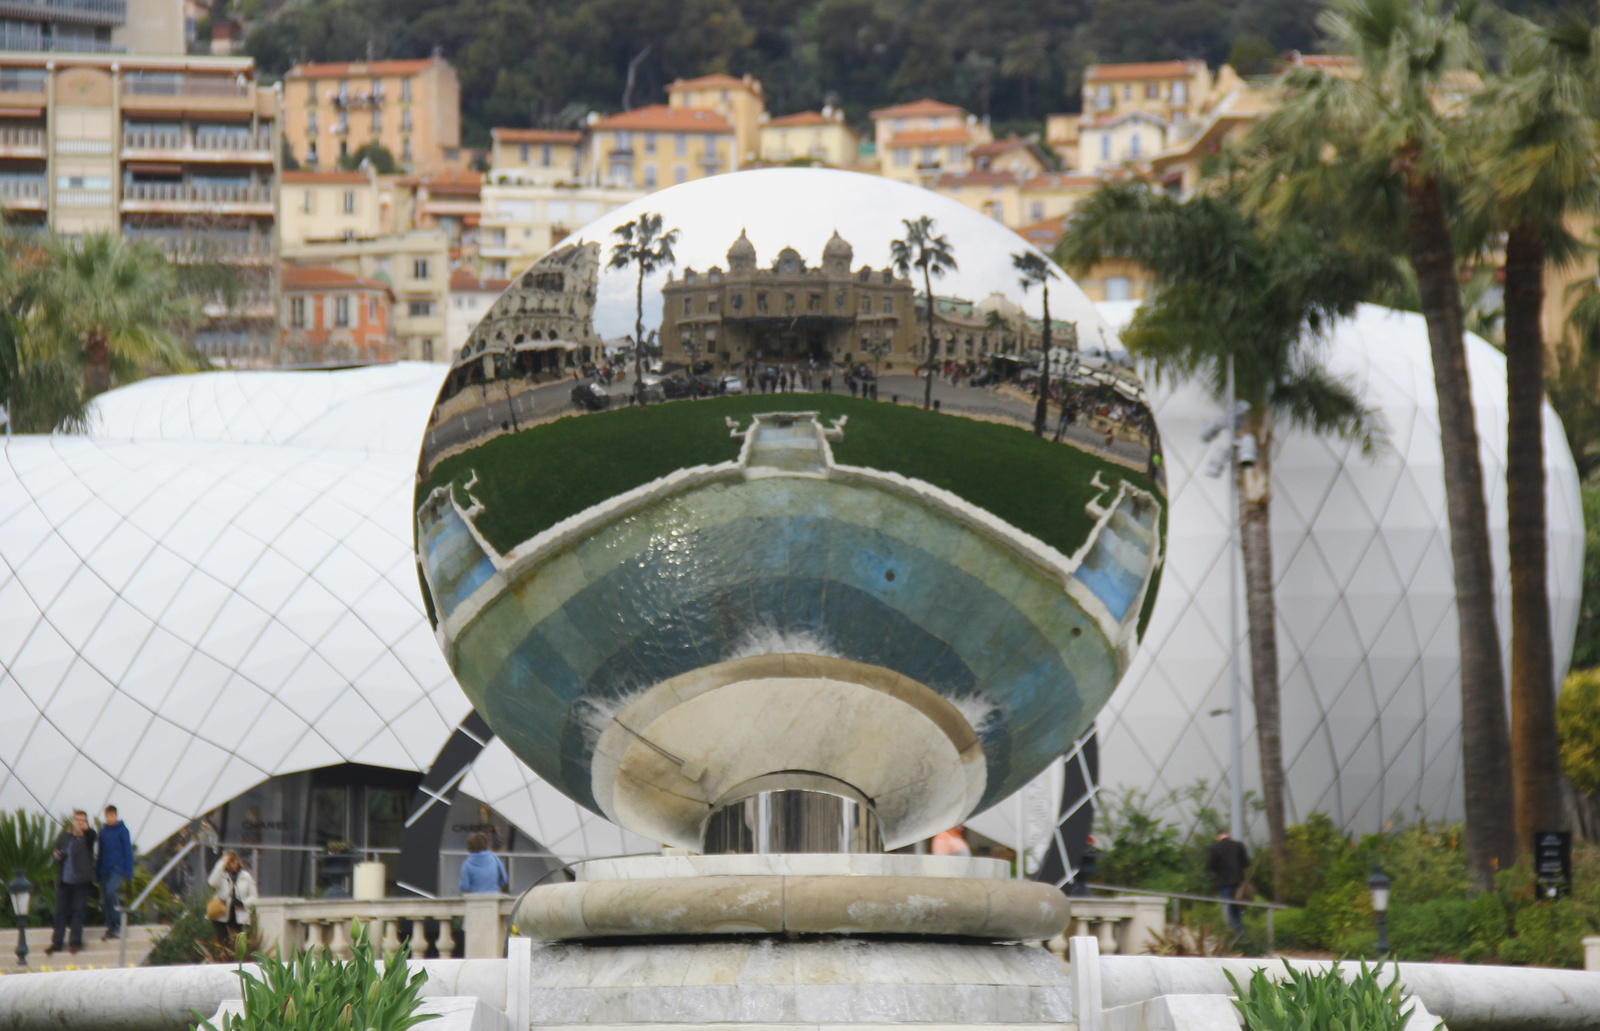 Monte Carlo-i gömb 1.